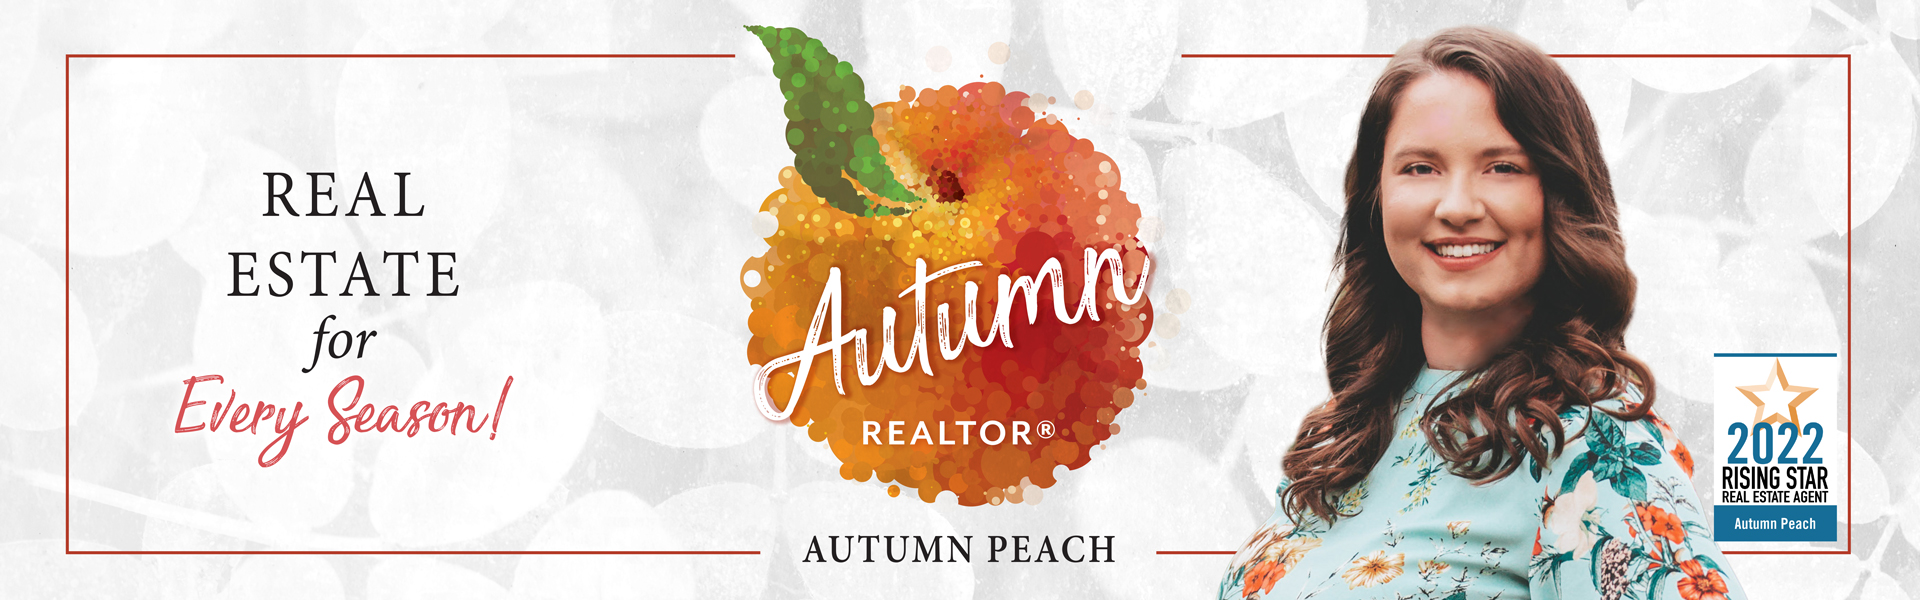 Autumn Peach